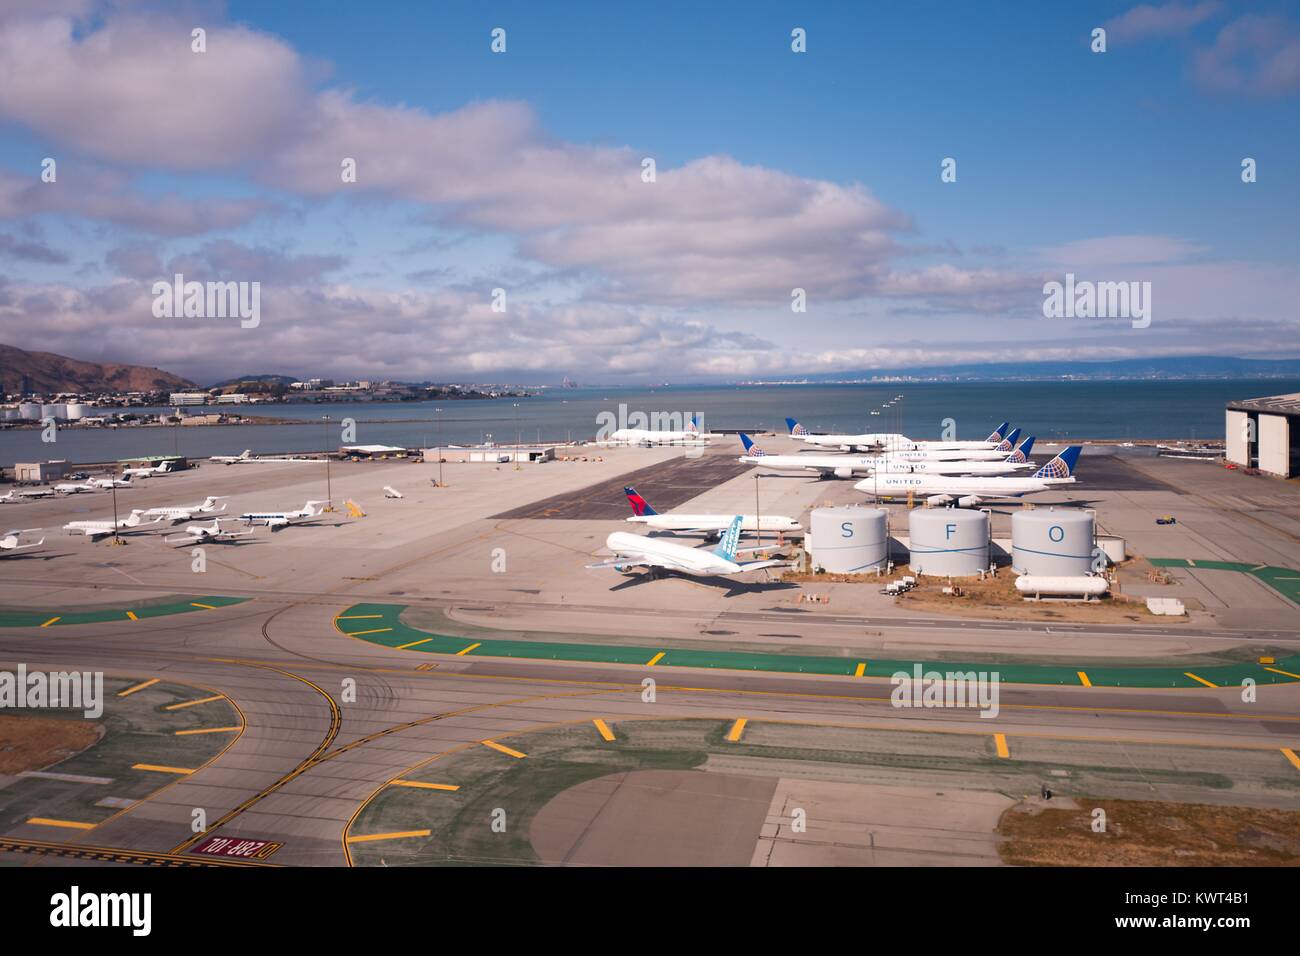 Vista aerea dell'Aeroporto Internazionale di San Francisco (SFO), San Francisco, California, con United Airlines getti, serbatoi contrassegnati con le lettere di chiamata "FO", e la baia di San Francisco visibile, Settembre 13, 2017. Foto Stock